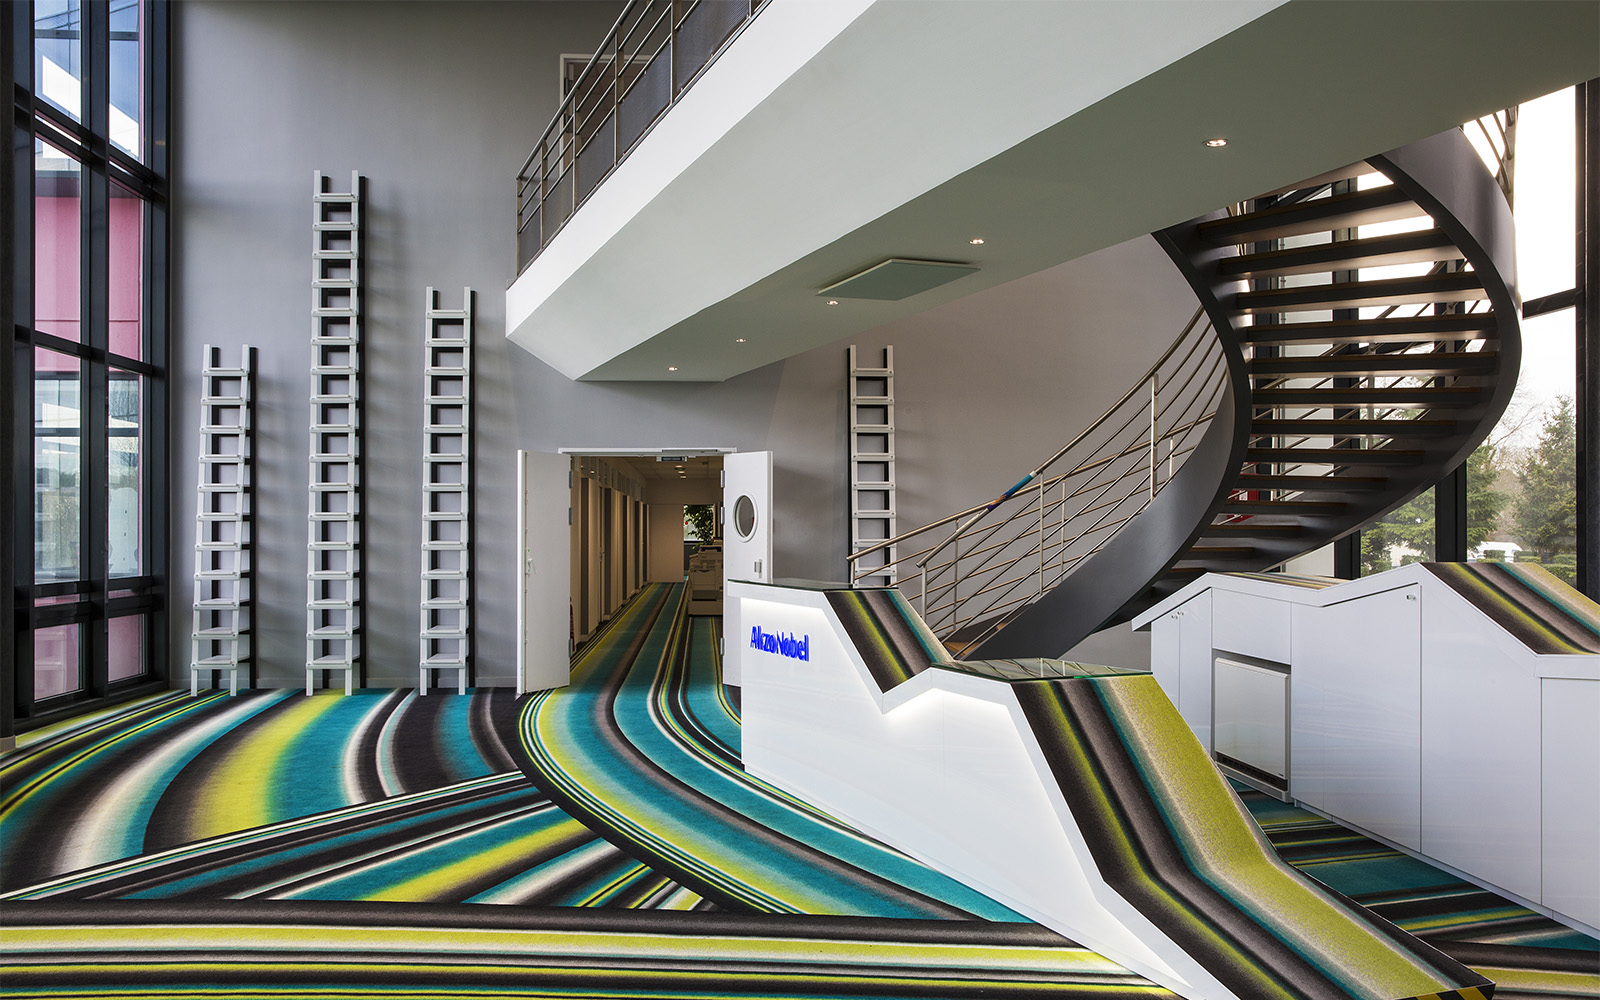 Teppich Design Trends: Bunter Streifen Teppich in Eingangshalle